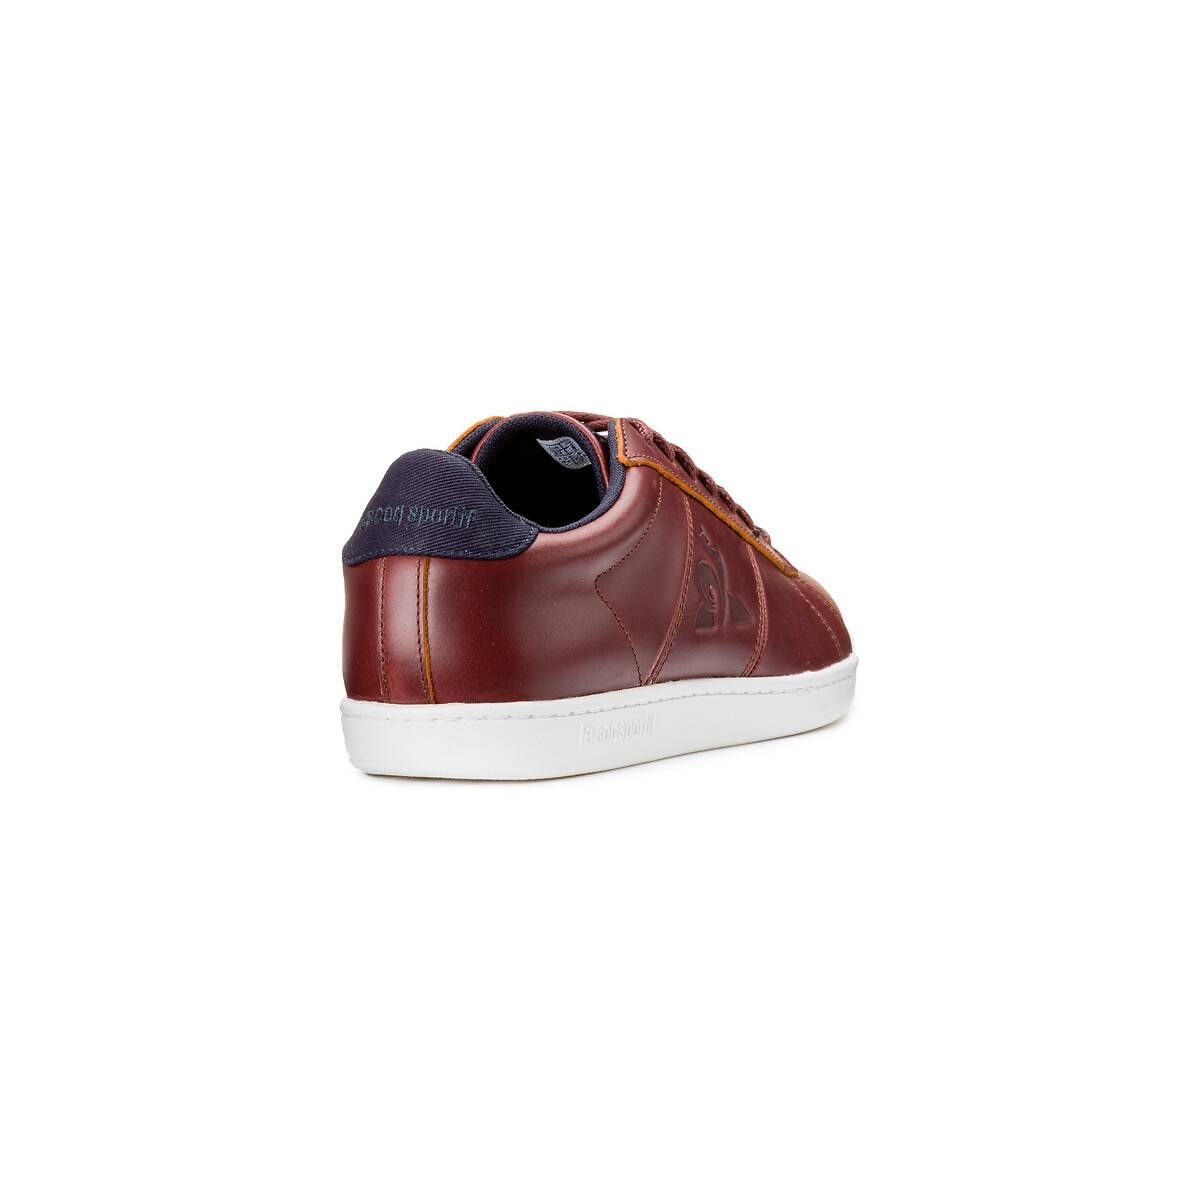  Le Coq Sportif Courtclassic Men's Sports Shoes, Dark Brown,  8.5 AU